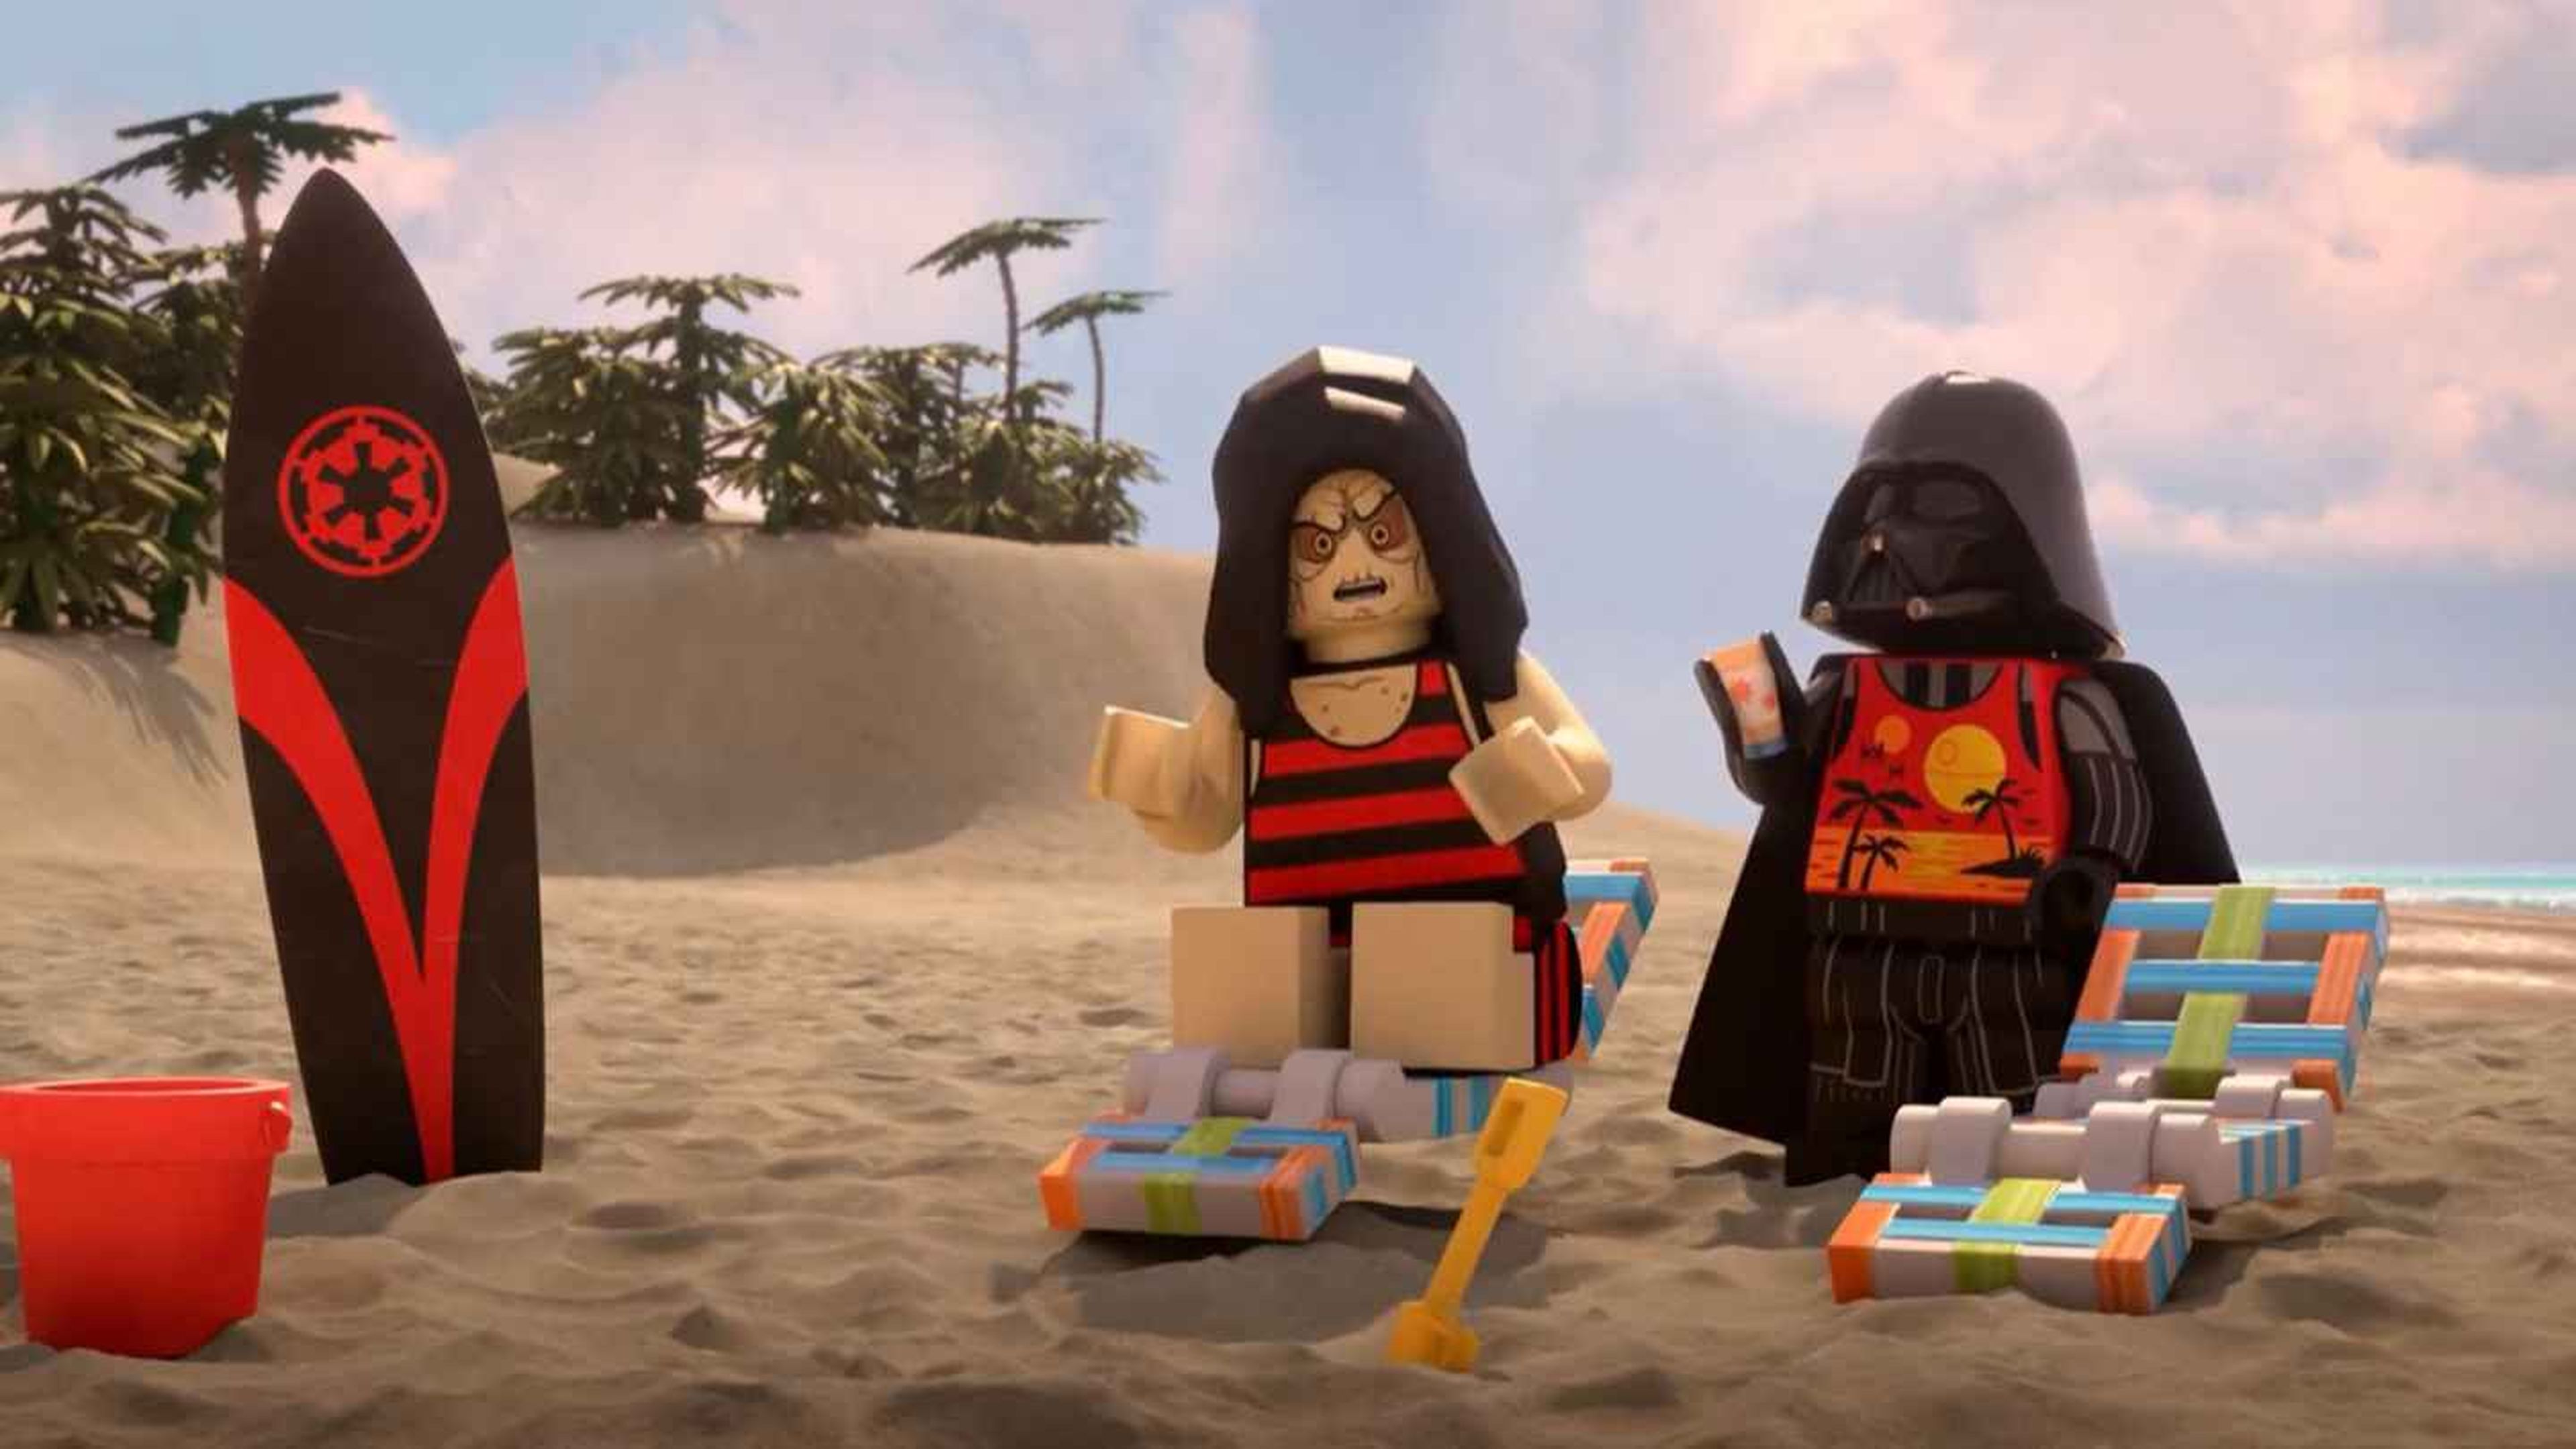 LEGO Star Wars: Summer Vacation (2022)